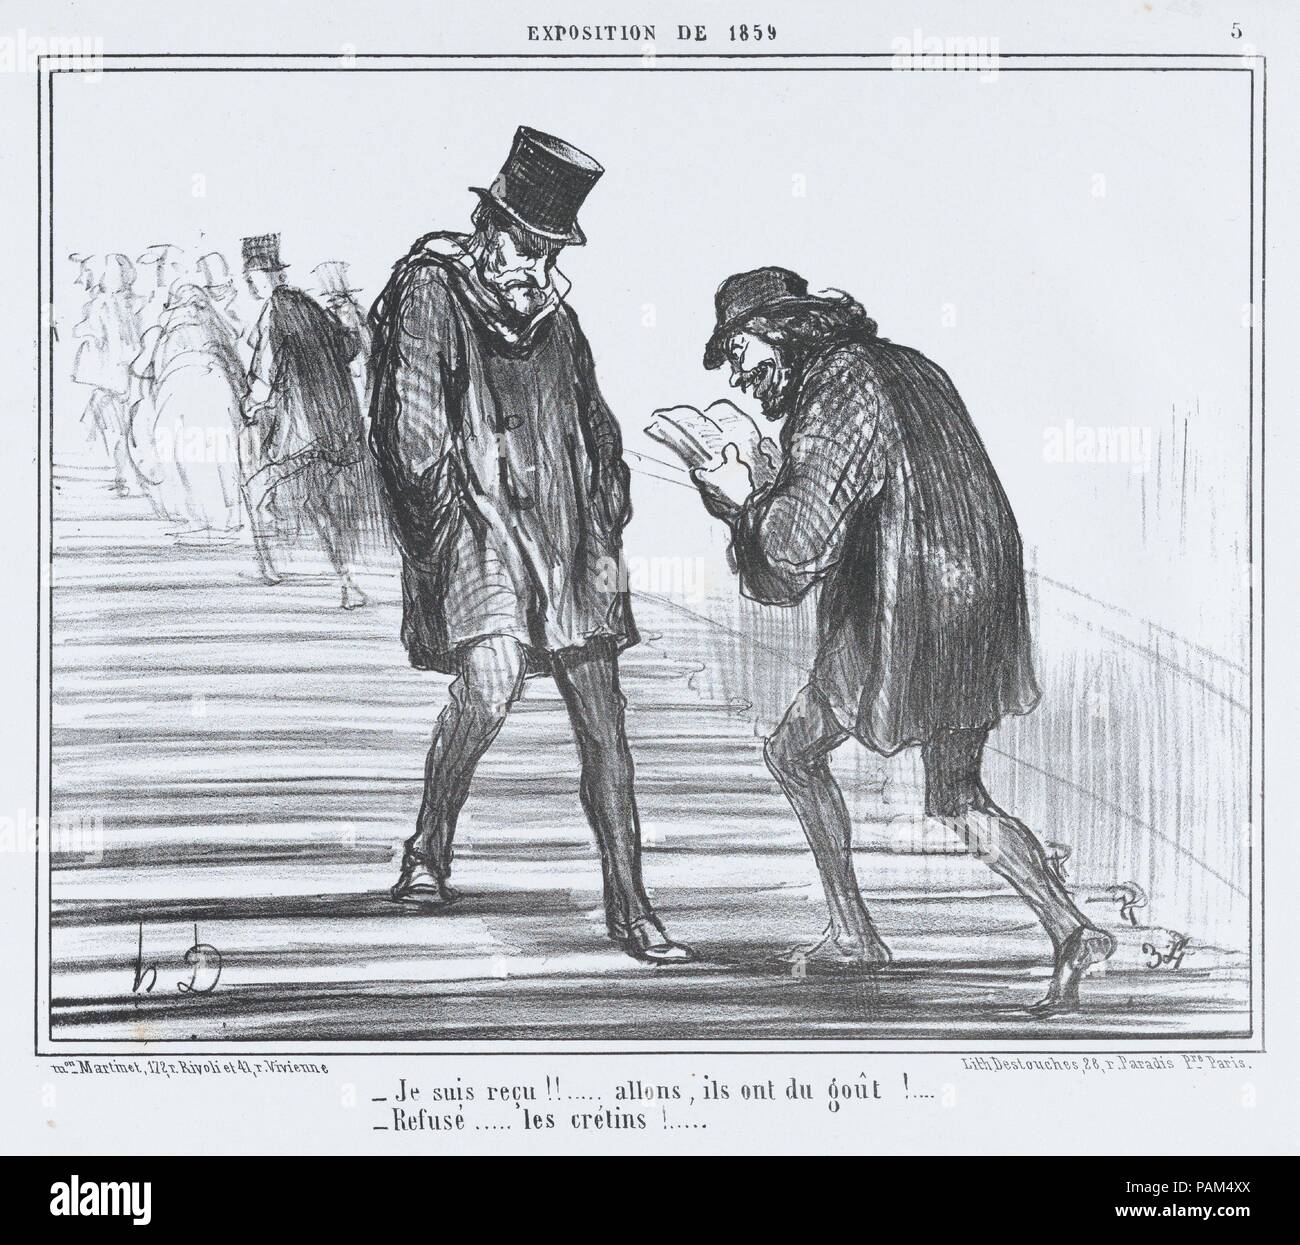 Je suis Beispiele!!... von L'Exposition de 1859, in Le Charivari, 22. April 1859 veröffentlicht. Artist: Honoré Daumier (Französisch, Marseille 1808-1879 Valmondois). Maße: Blatt: 10 11/16 x 14 3/16 in. (27,2 × 36,1 cm) Bild: 8 1/2 x 10 9/16 in. (21,6 × 26,8 cm). Drucker: destouches (Paris). Herausgeber: Aaron Martinet (Französisch, 1762-1841). Serie/Portfolio: L'Exposition de 1859. Datum: April 22, 1859. Museum: Metropolitan Museum of Art, New York, USA. Stockfoto